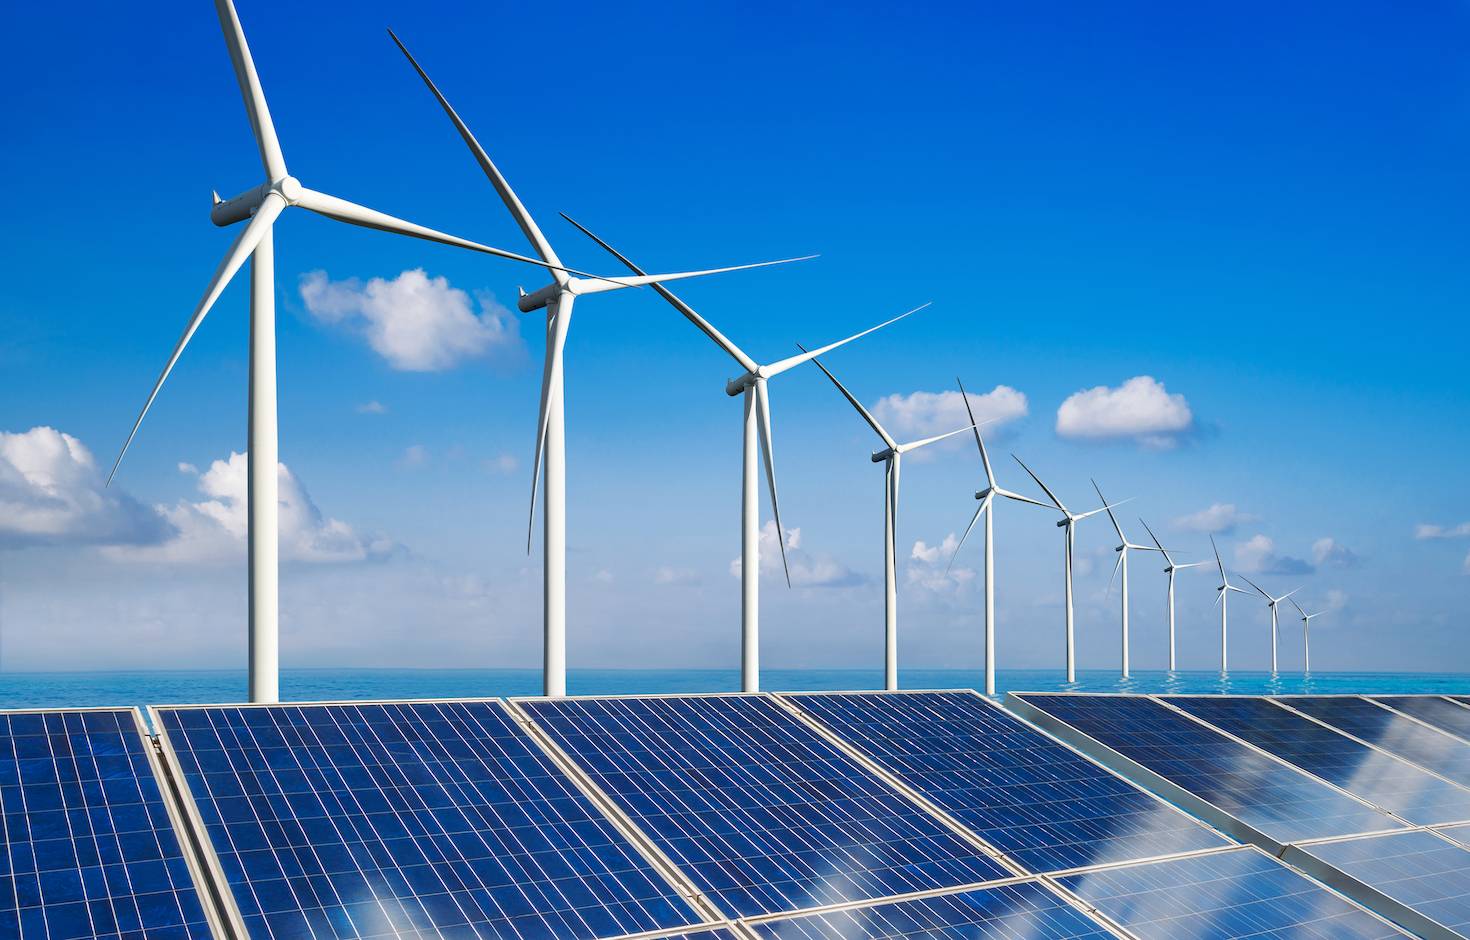 IEA：今年太陽能投資將首次超過石油